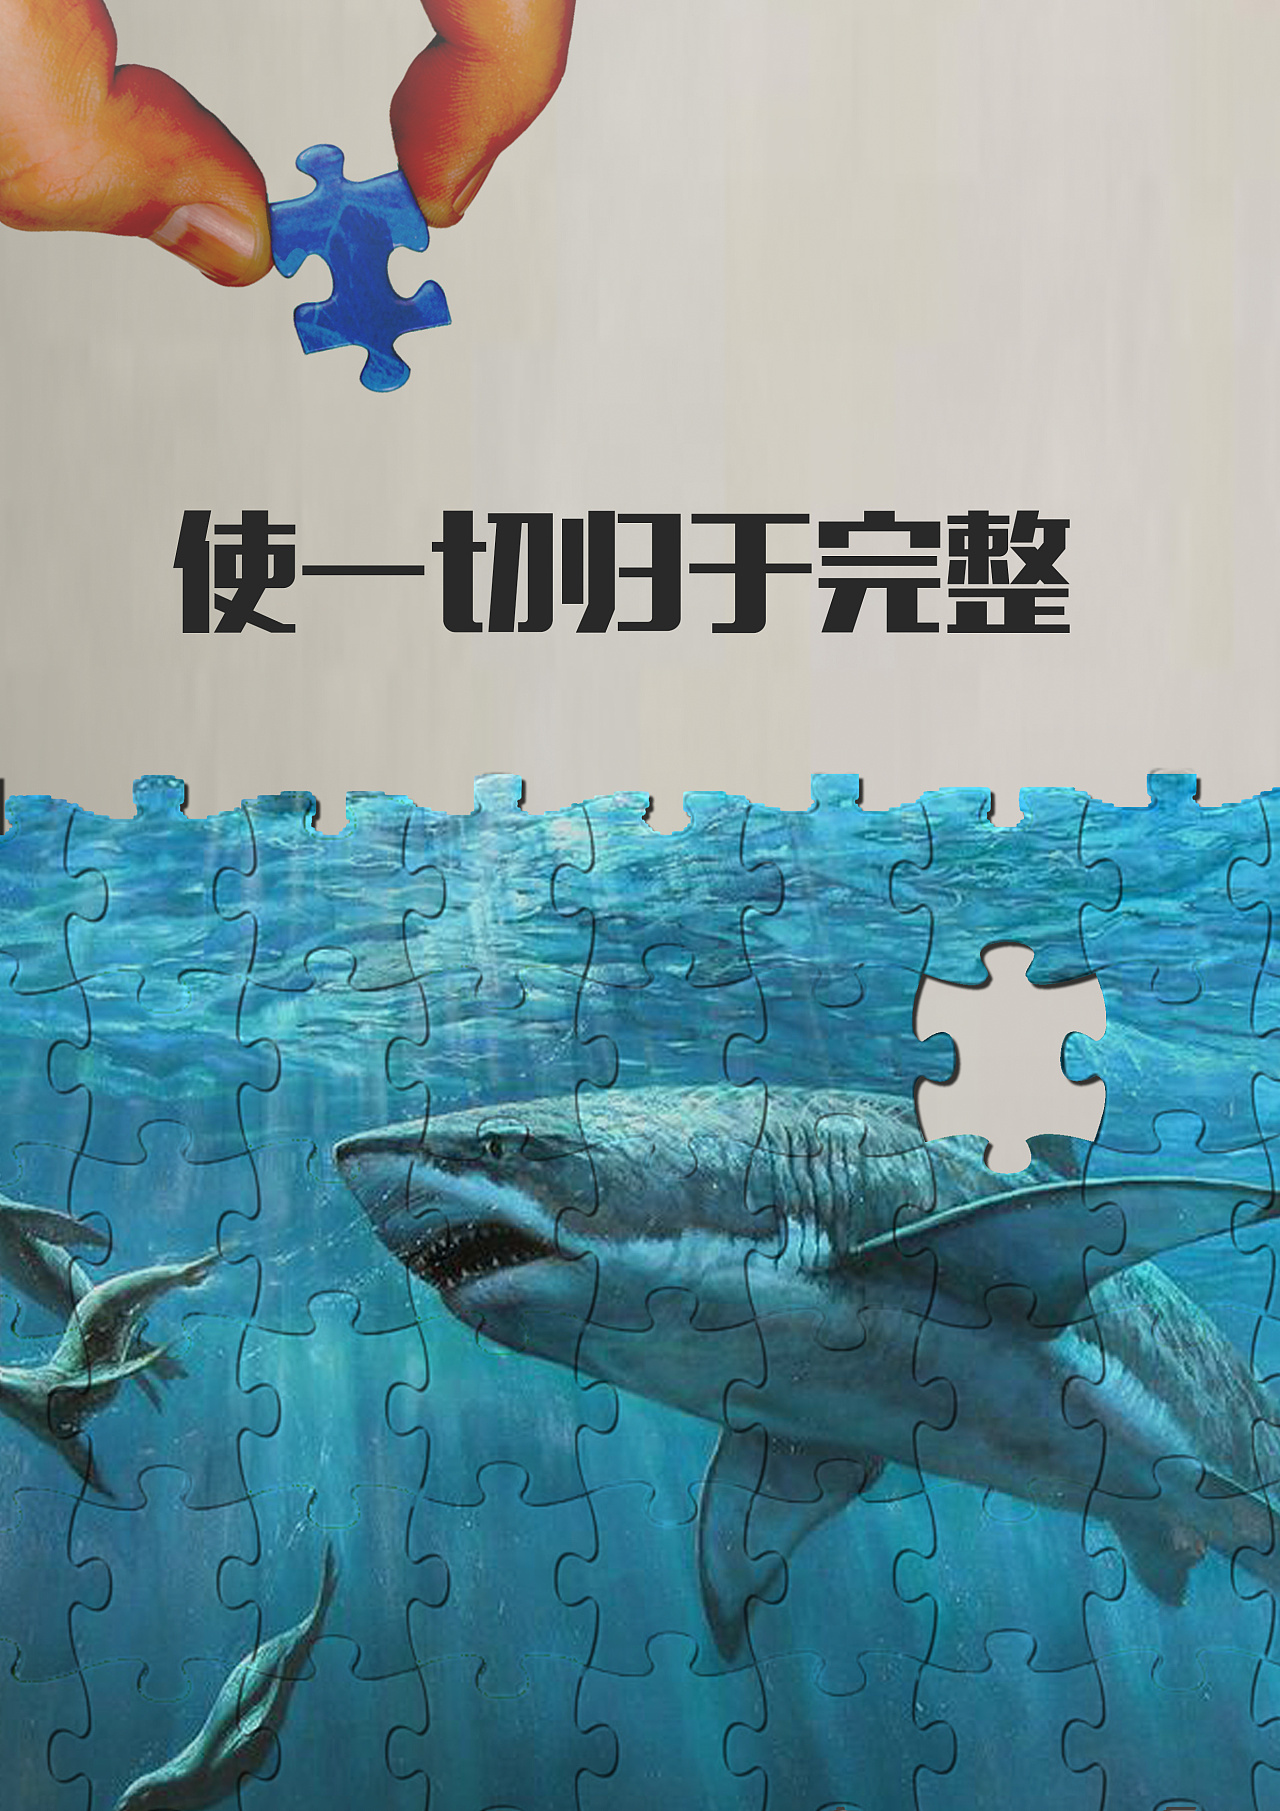 海洋环境保护公益广告海报设计模板-变色鱼